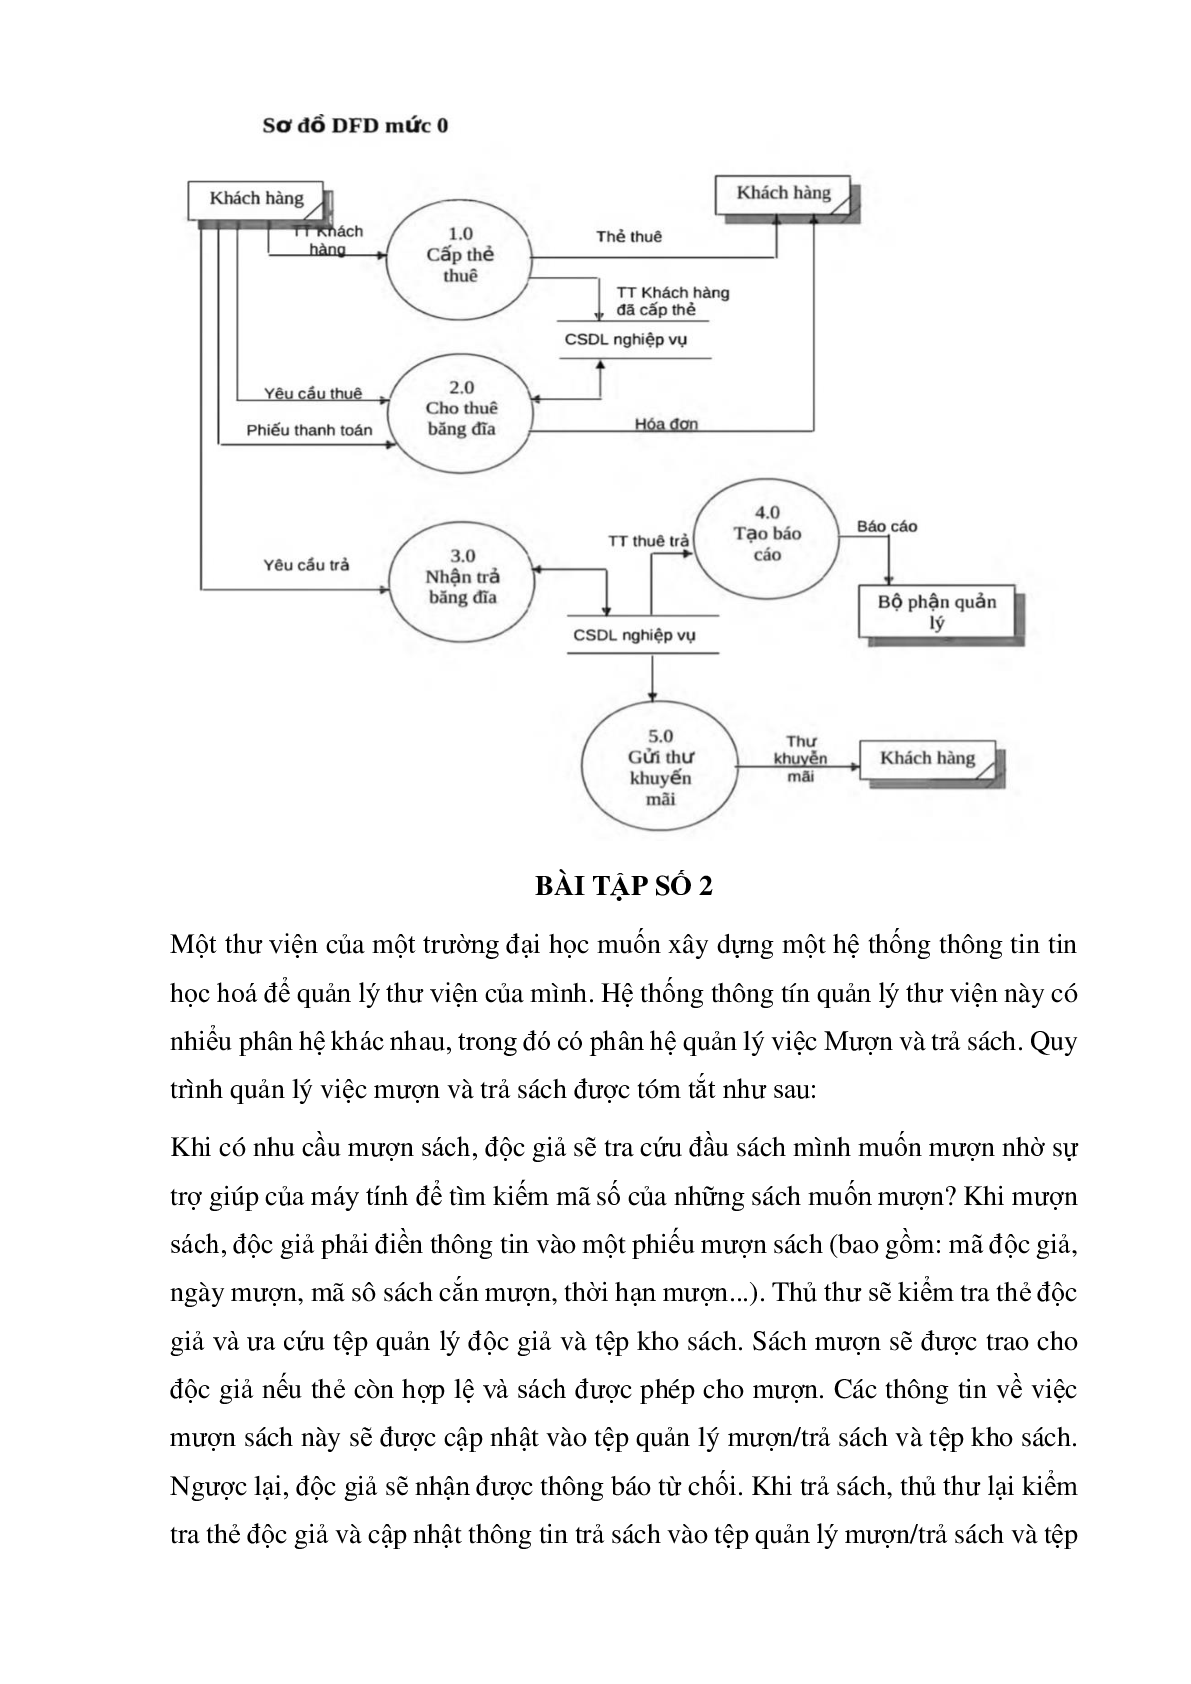 Ngân hàng bài tập Hệ thống thông tin quản lý (có lời giải) hay, hấp dẫn nhất (trang 3)